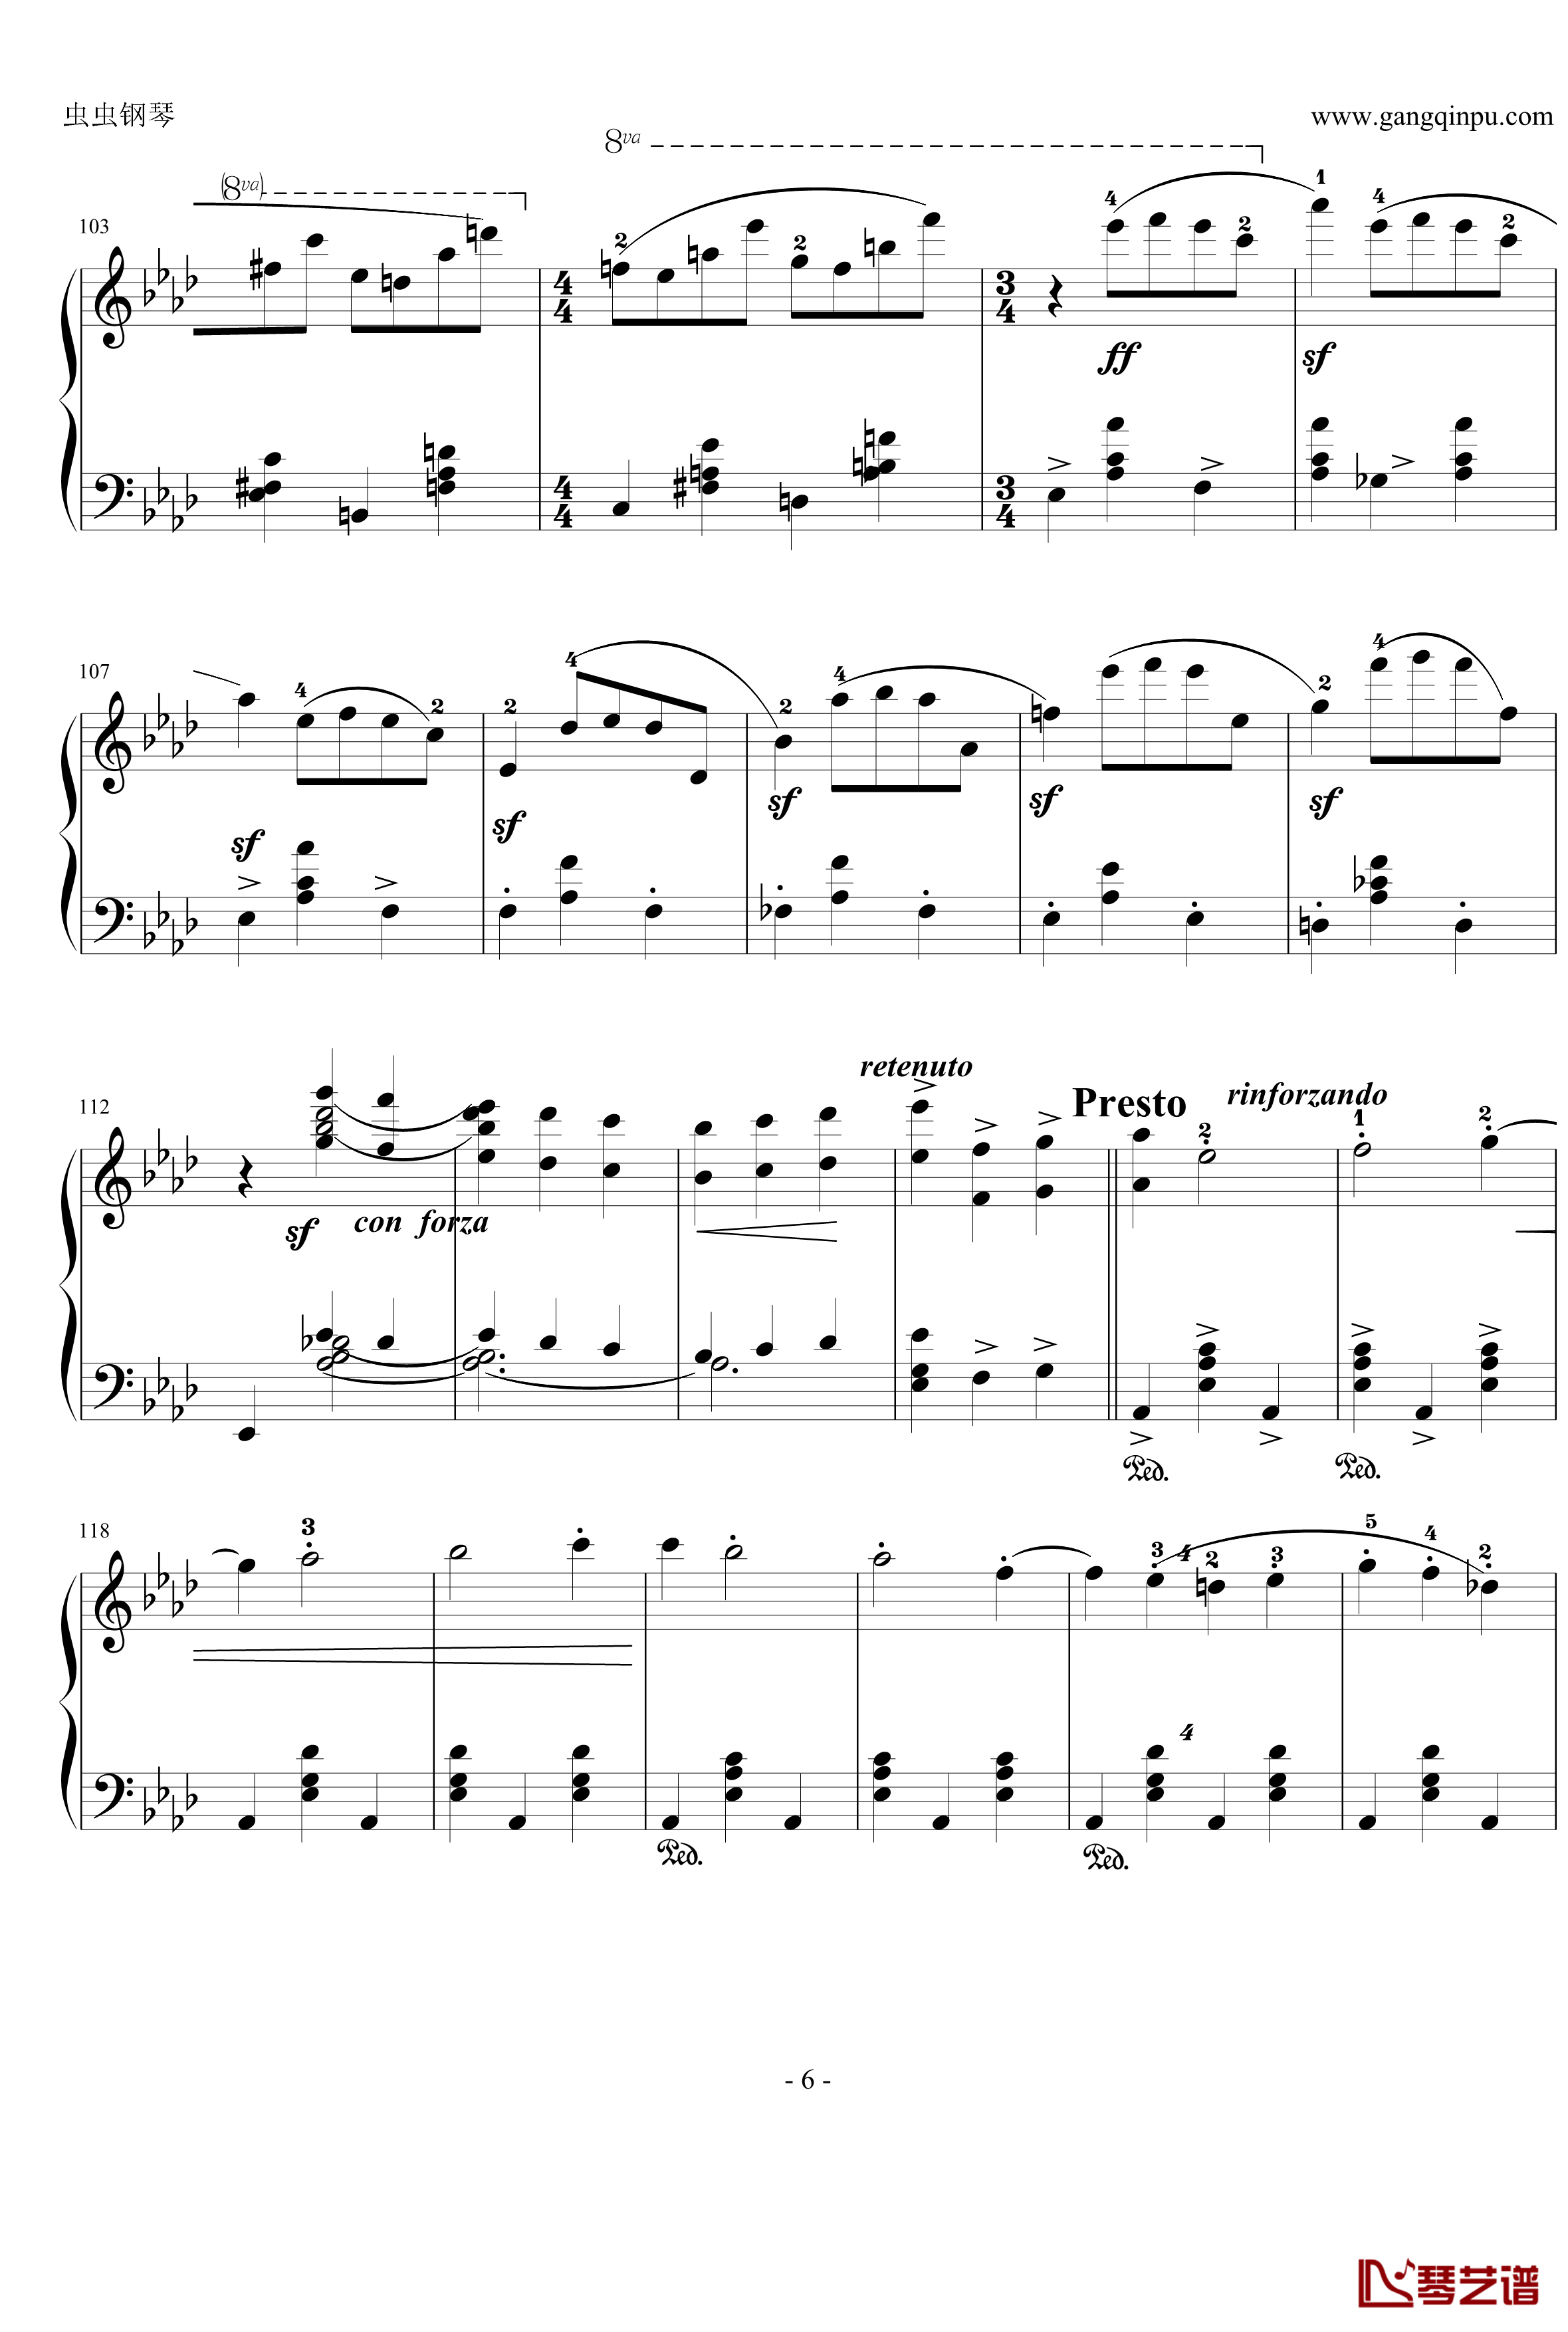 狂欢节钢琴谱-之前奏-舒曼6